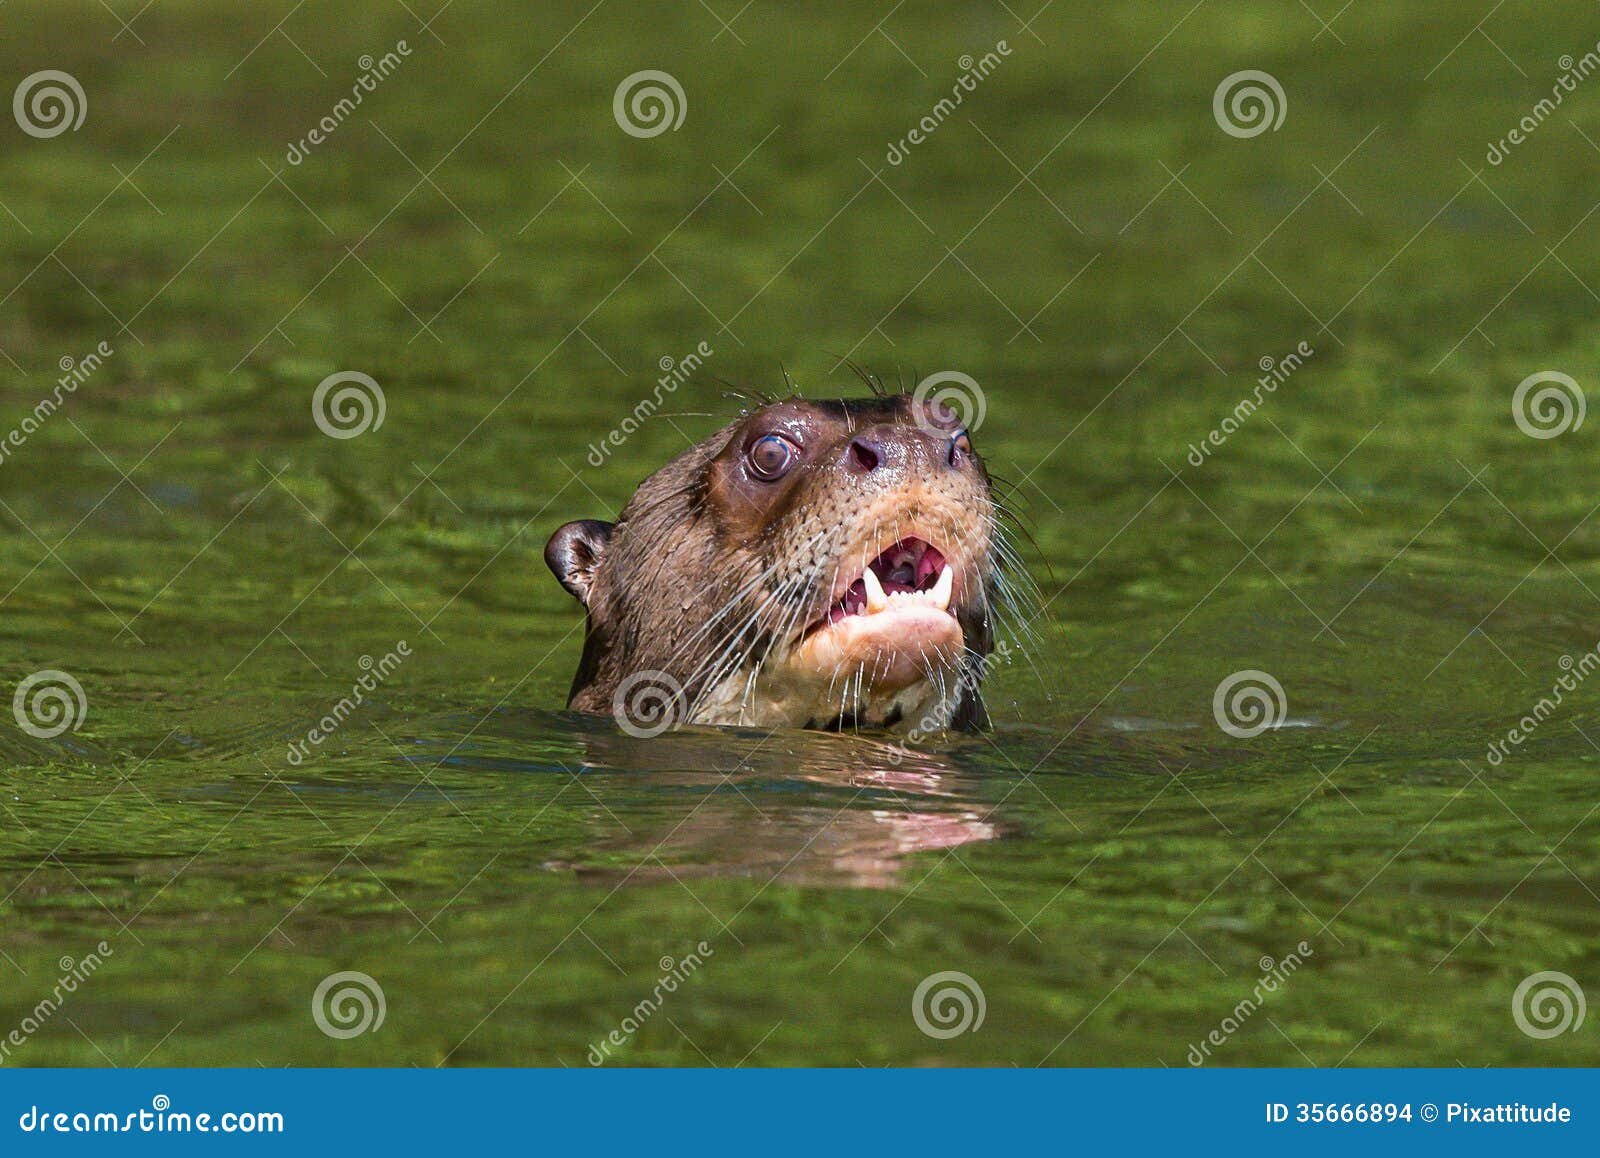 giant otter swimming peruvian amazon jungle madre de dios peru